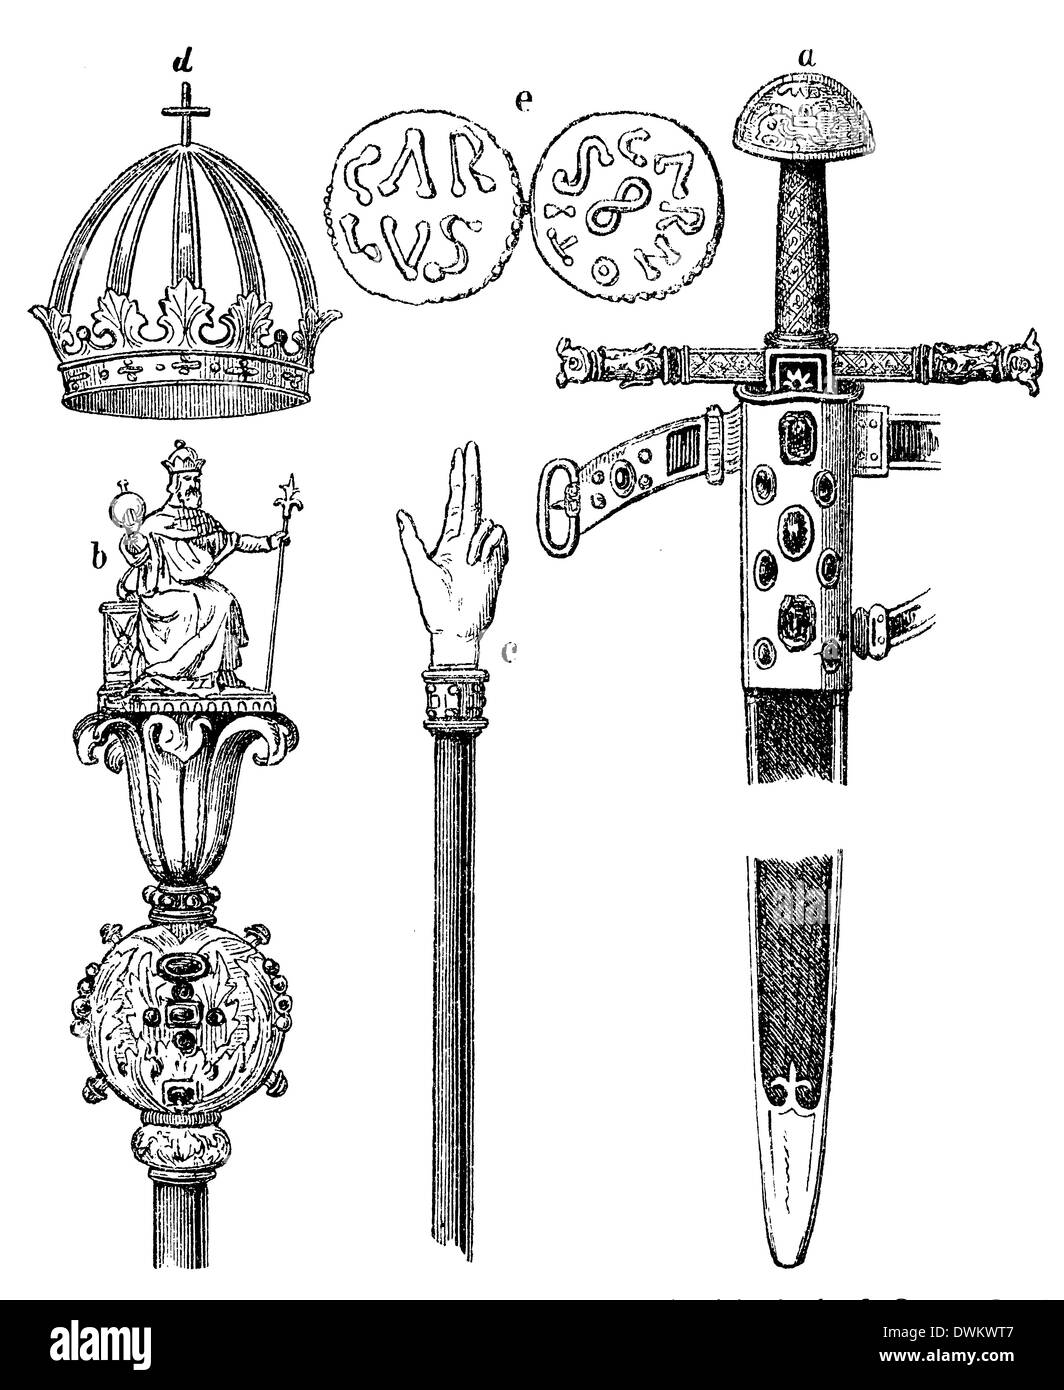 Schwert (a), Zepter (b), Gerichtsstab (c) und Krone (d) Karls des Großen sowie Münzen (e) aus der Zeit Karls des Großen Stock Photo